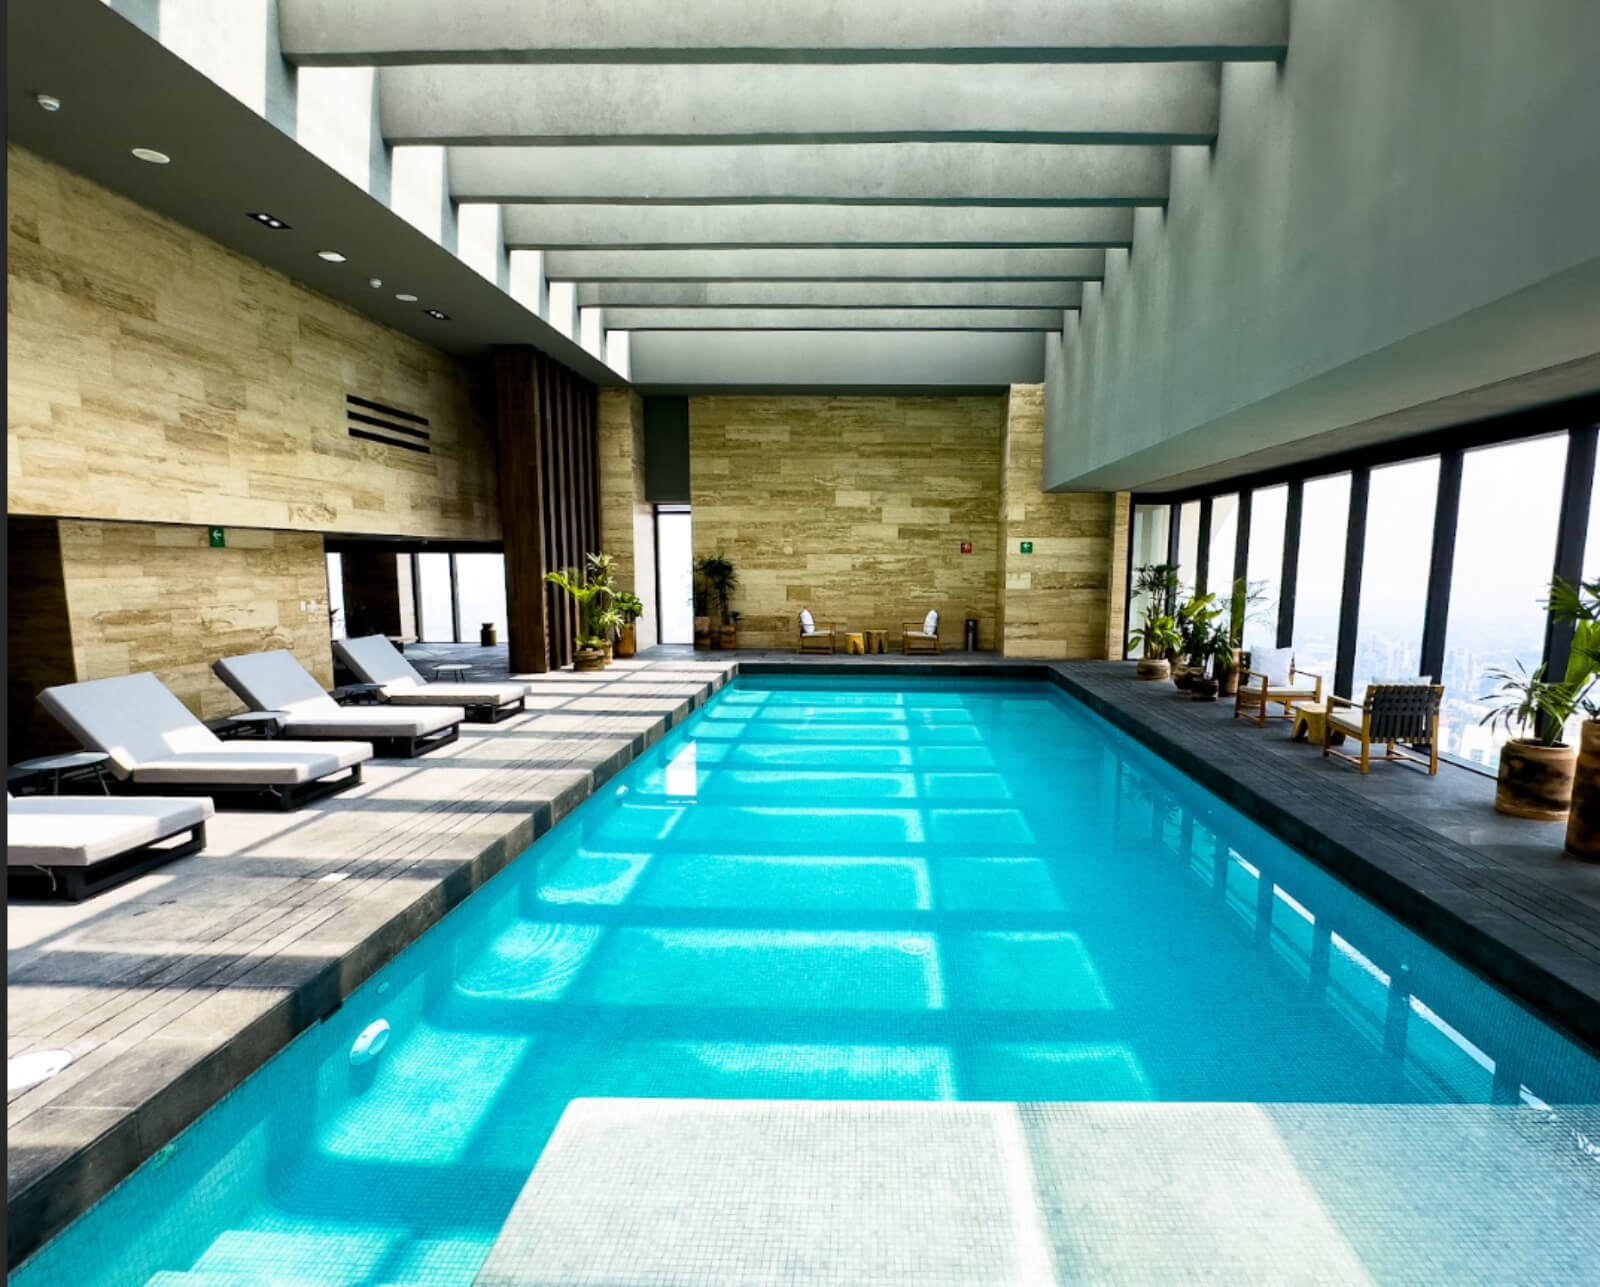 Apartment with terrace, pool, jacuzzi, pet-friendly, for pre-sale Polanco CDMX.